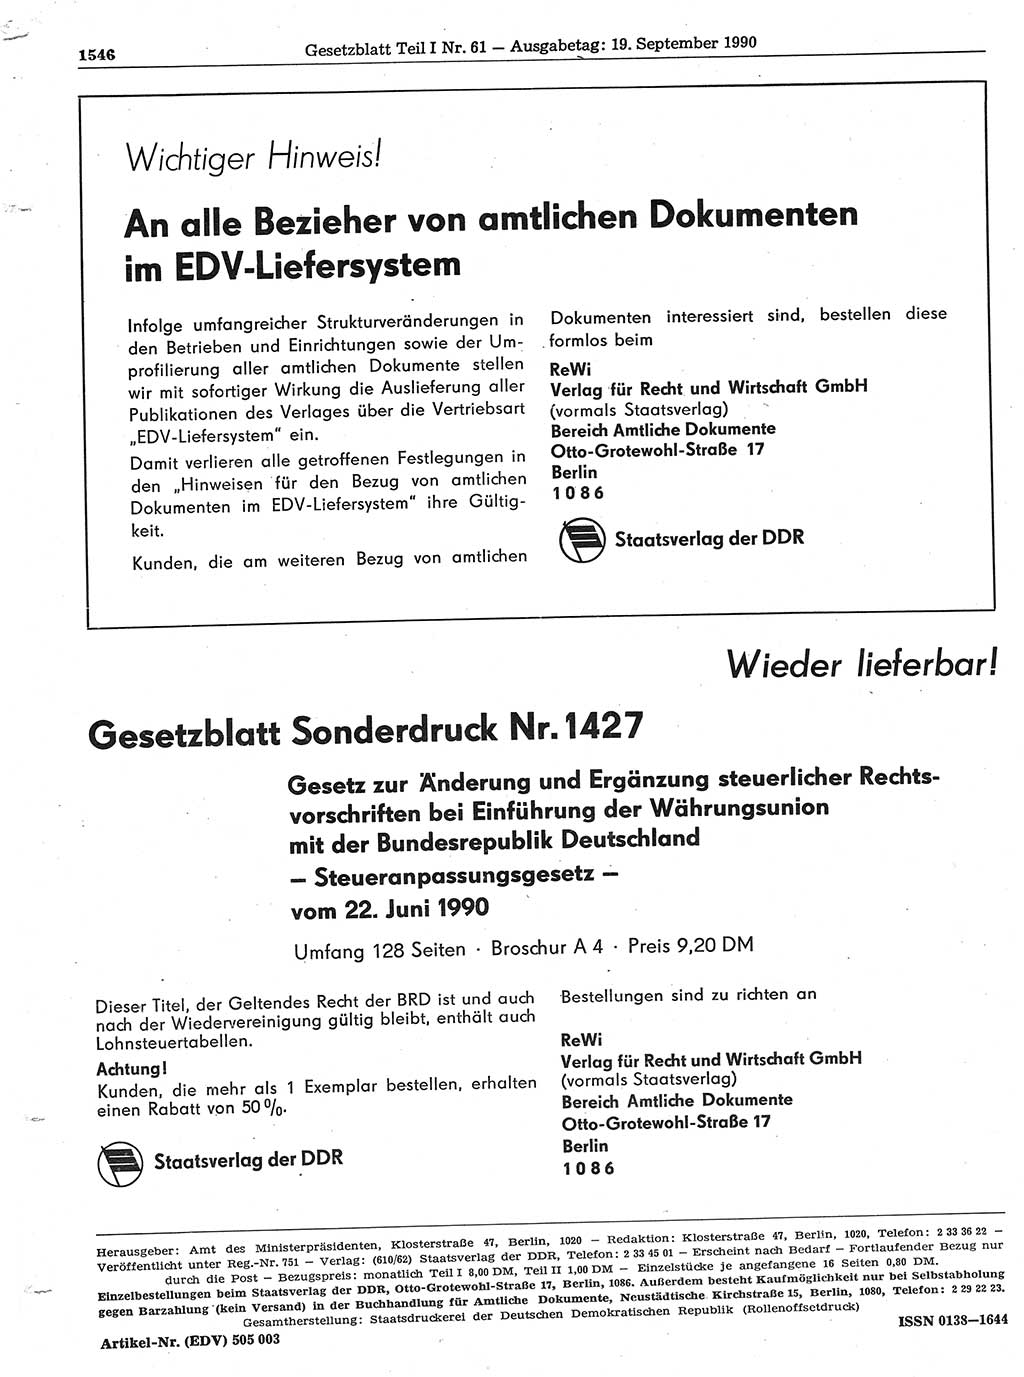 Gesetzblatt (GBl.) der Deutschen Demokratischen Republik (DDR) Teil Ⅰ 1990, Seite 1546 (GBl. DDR Ⅰ 1990, S. 1546)